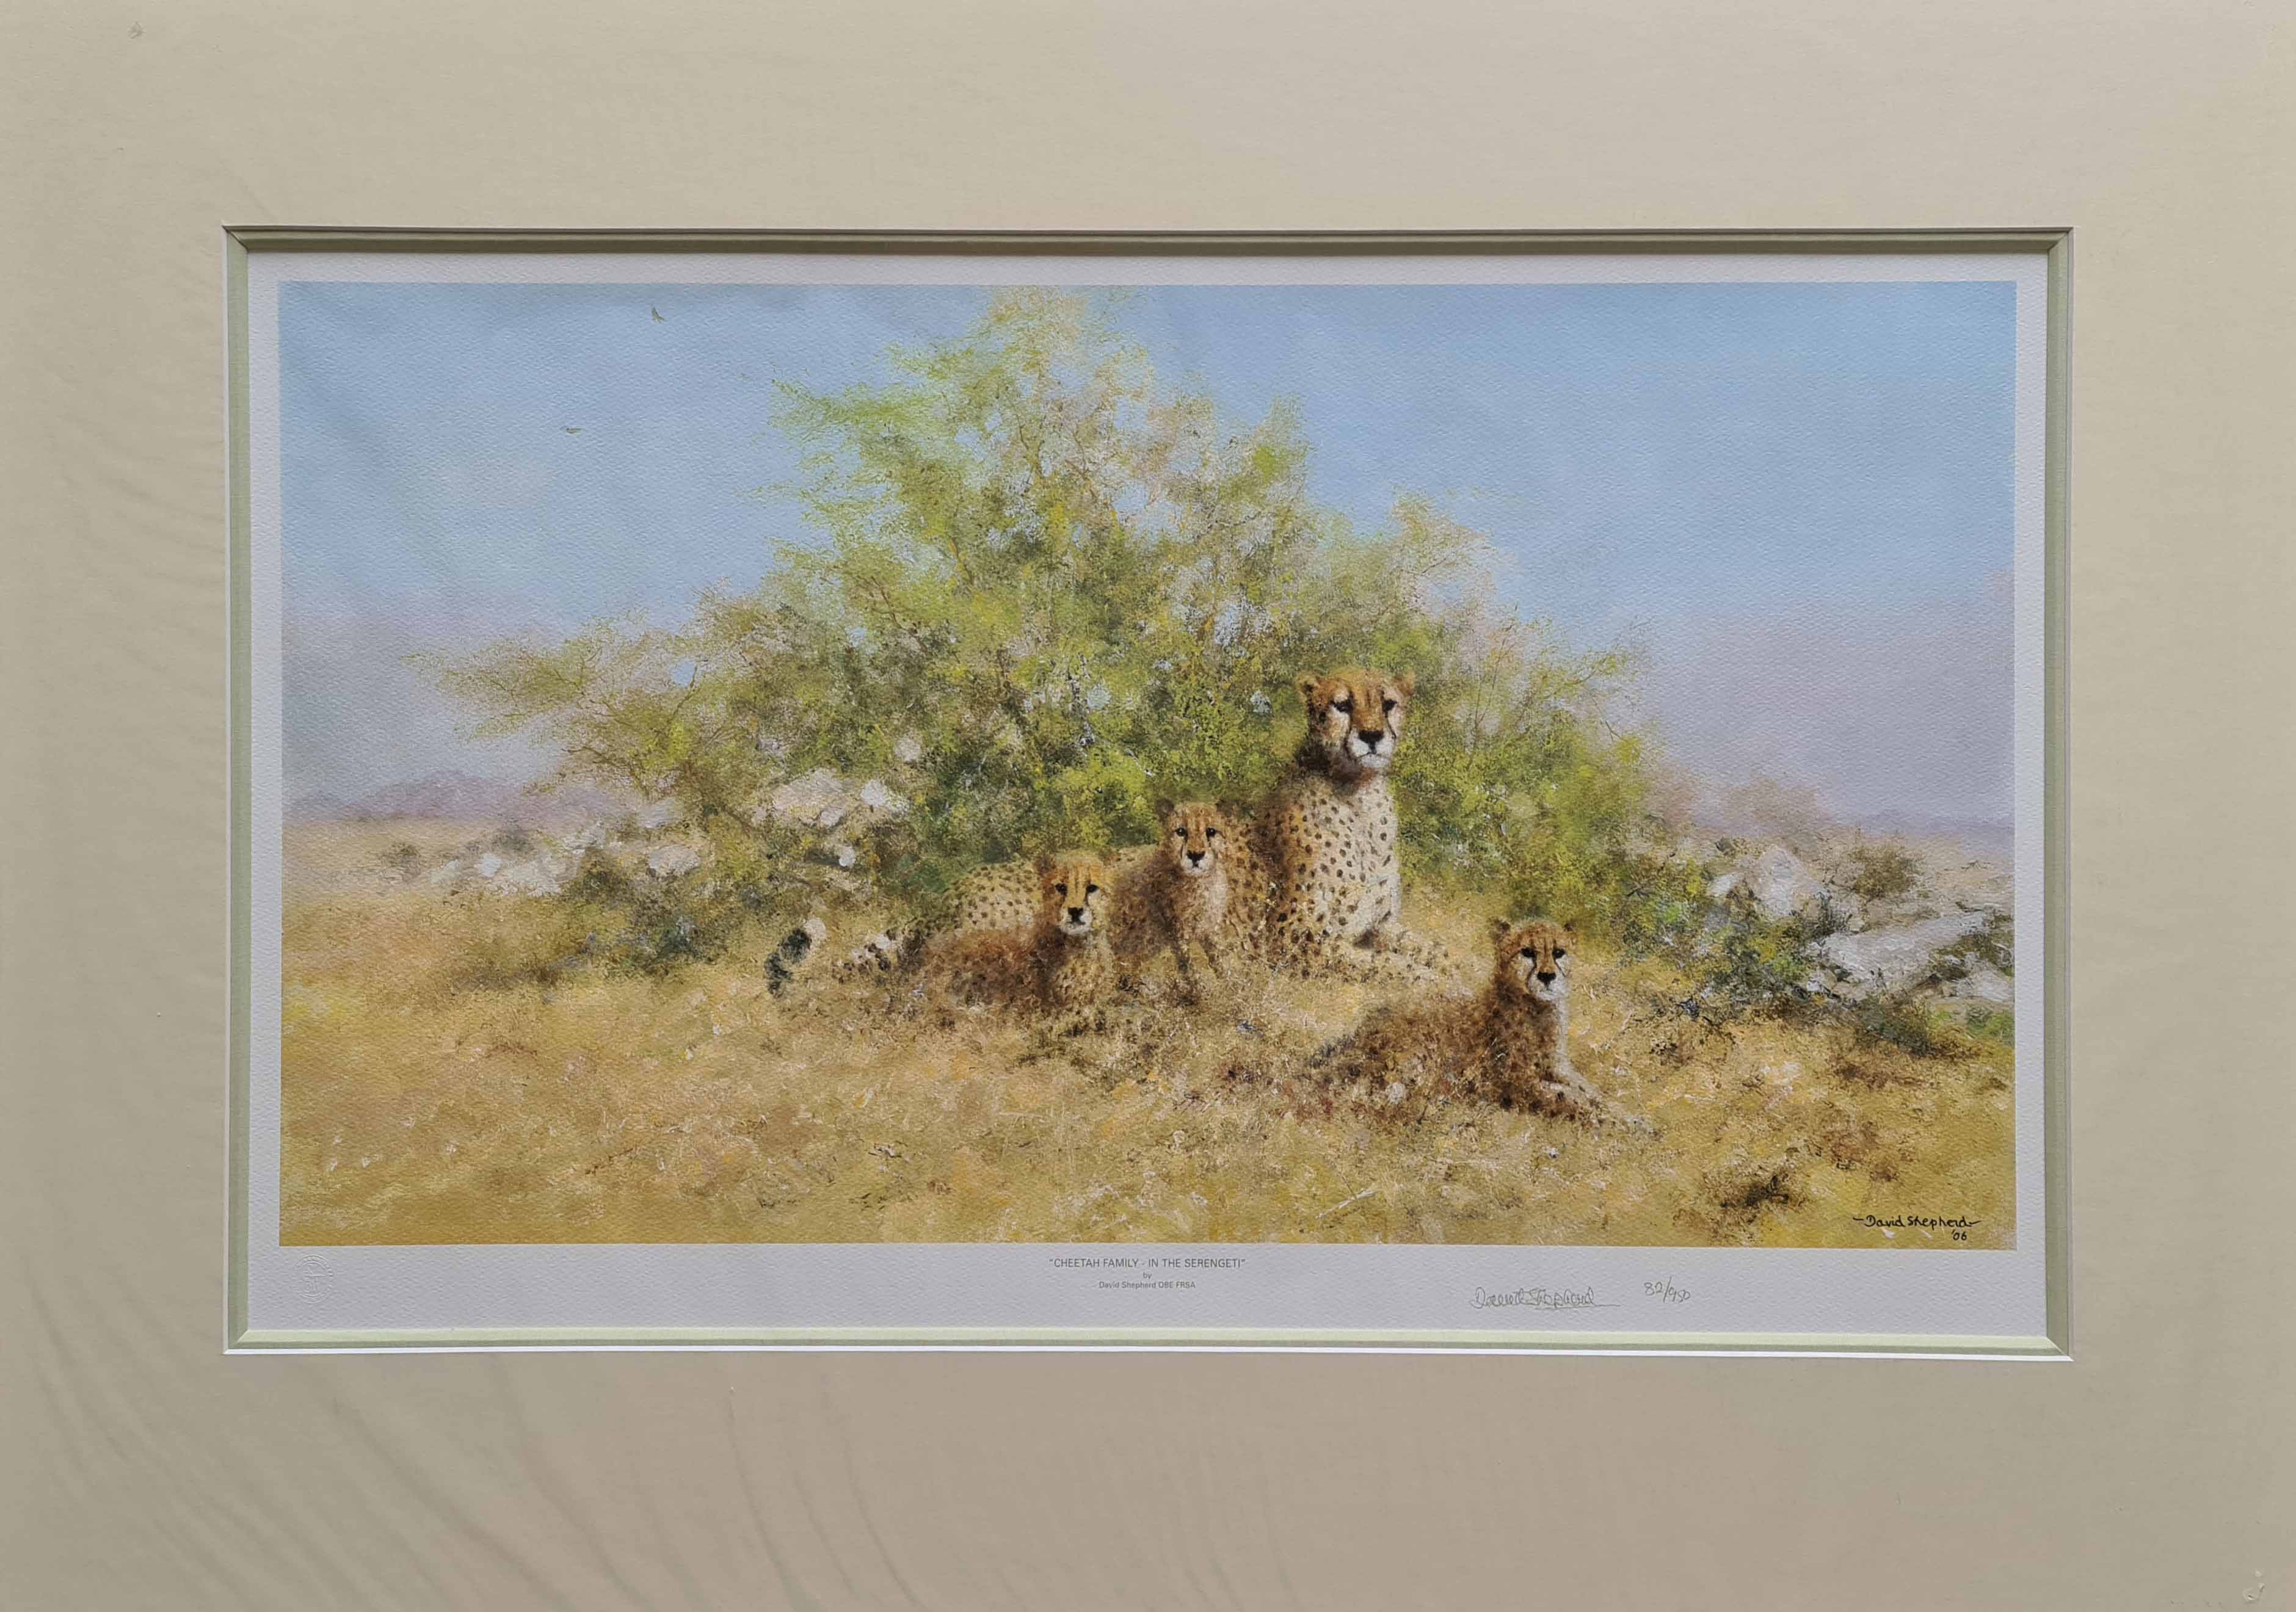 david shepherd cheetahs serengeti family print mounted